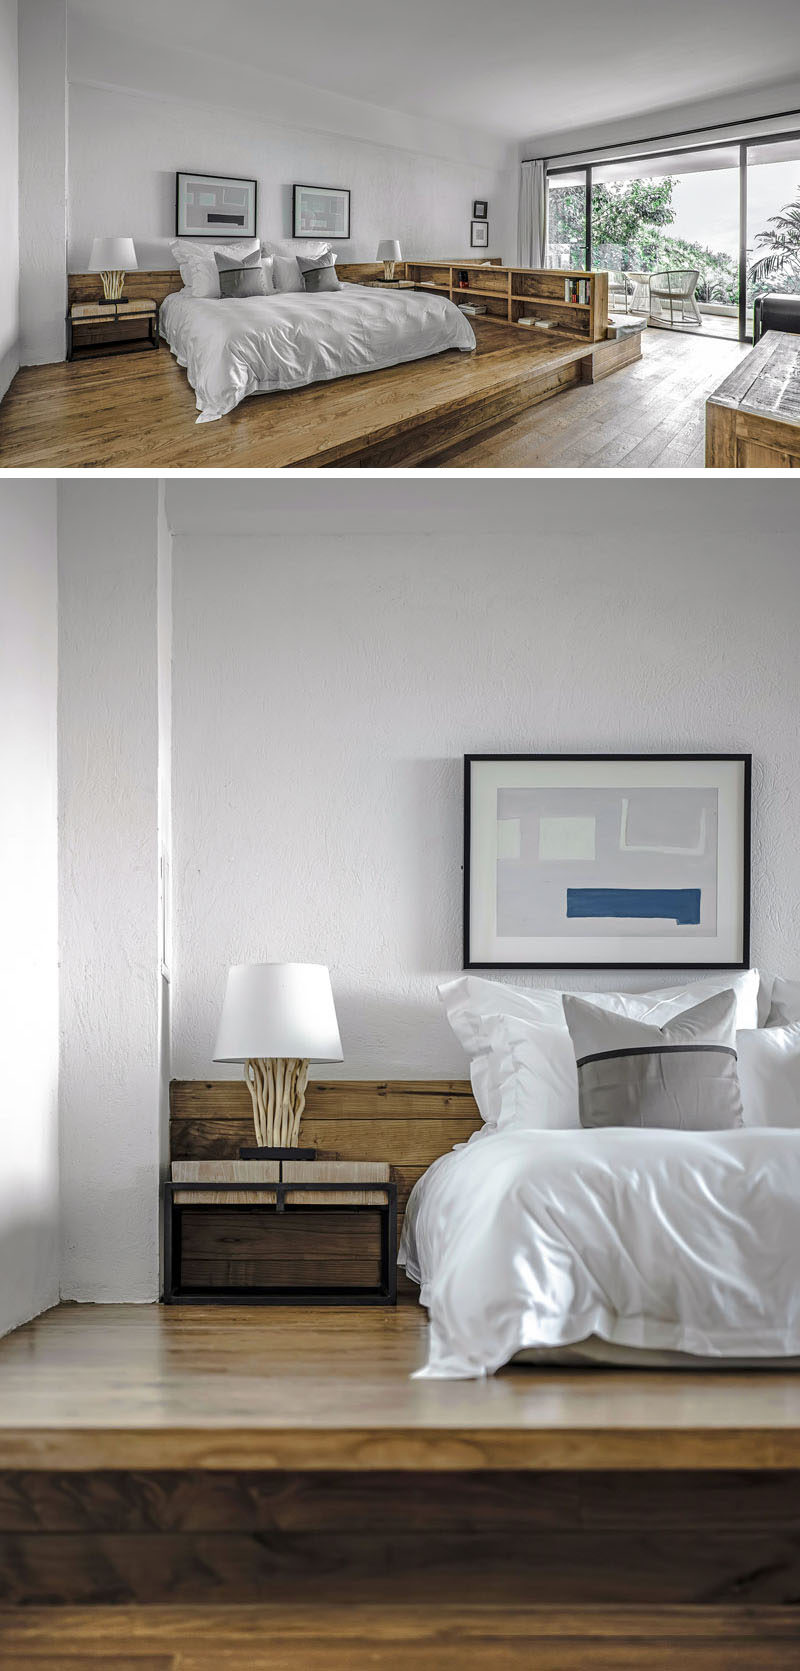 В этом современном гостиничном номере кровать приподнята над полом на деревянной платформе. #RaisedBed #ModernHotelRoom